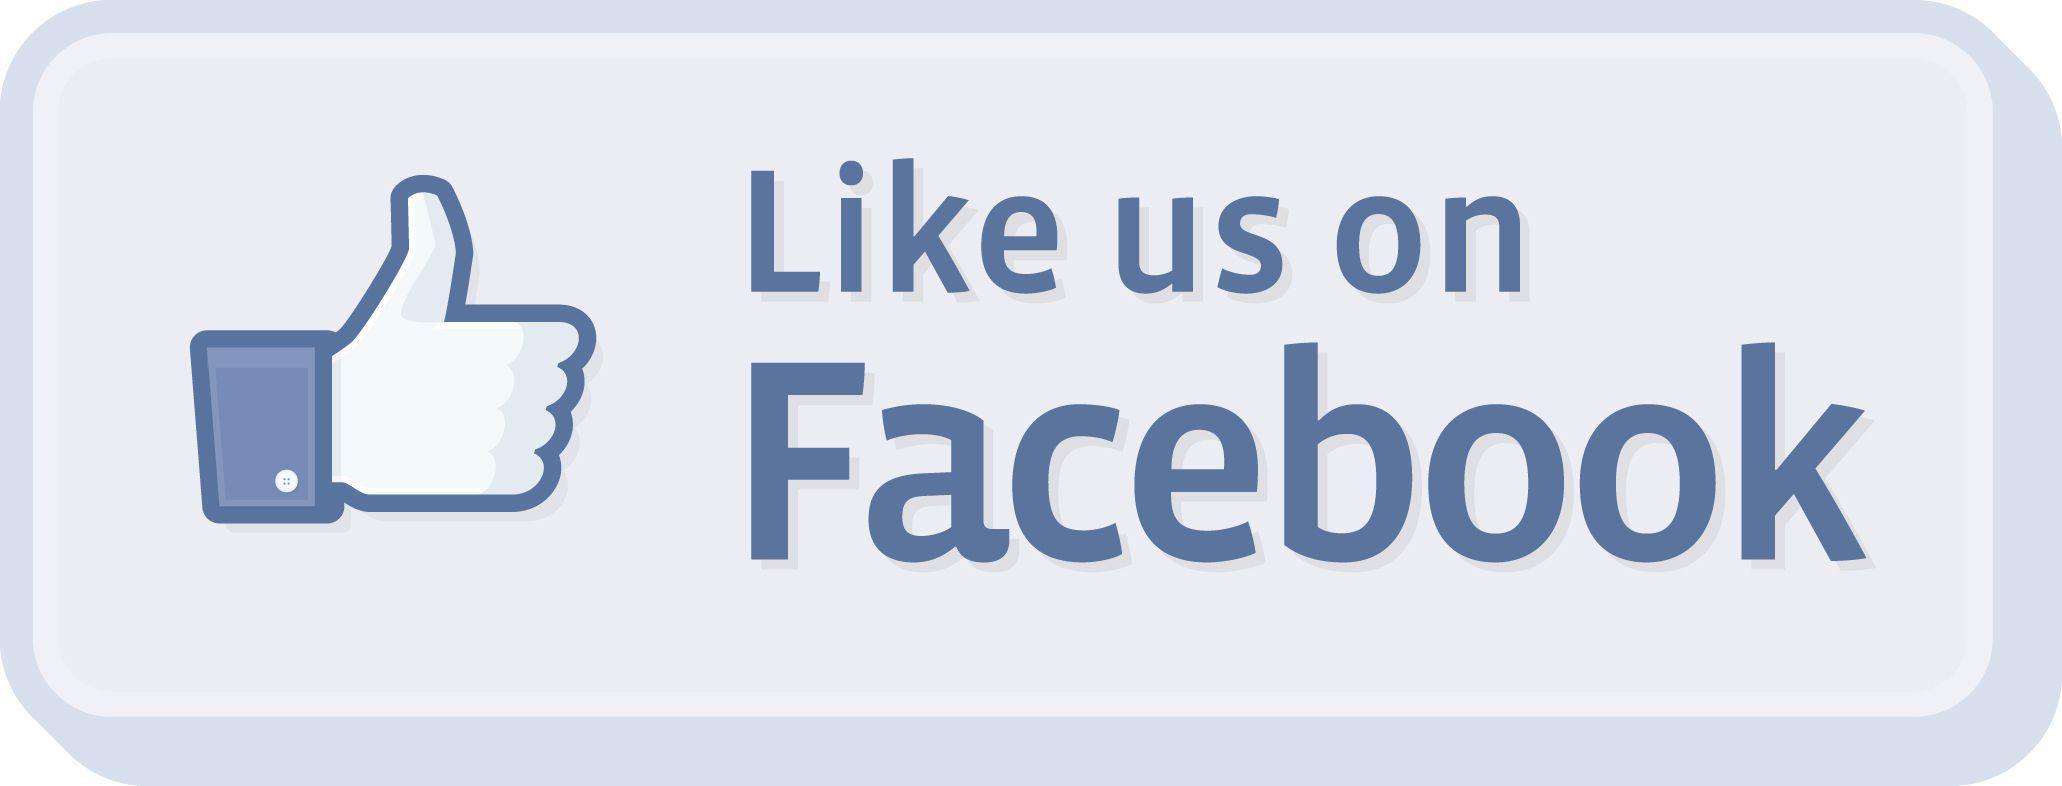 Like Us On Facebook Logo - like-us-on-facebook-logo